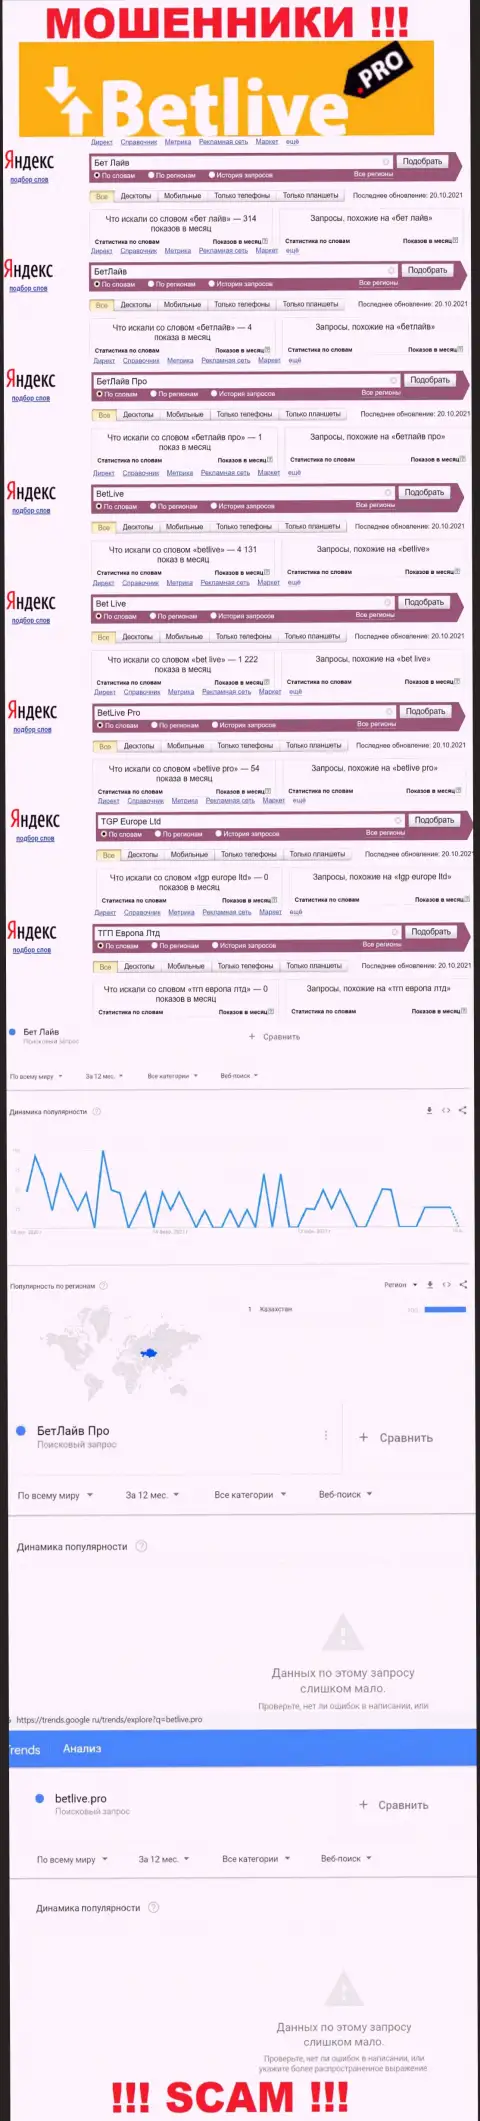 Статистические данные о запросах в поисковиках всемирной internet сети инфы об компании BetLive Pro